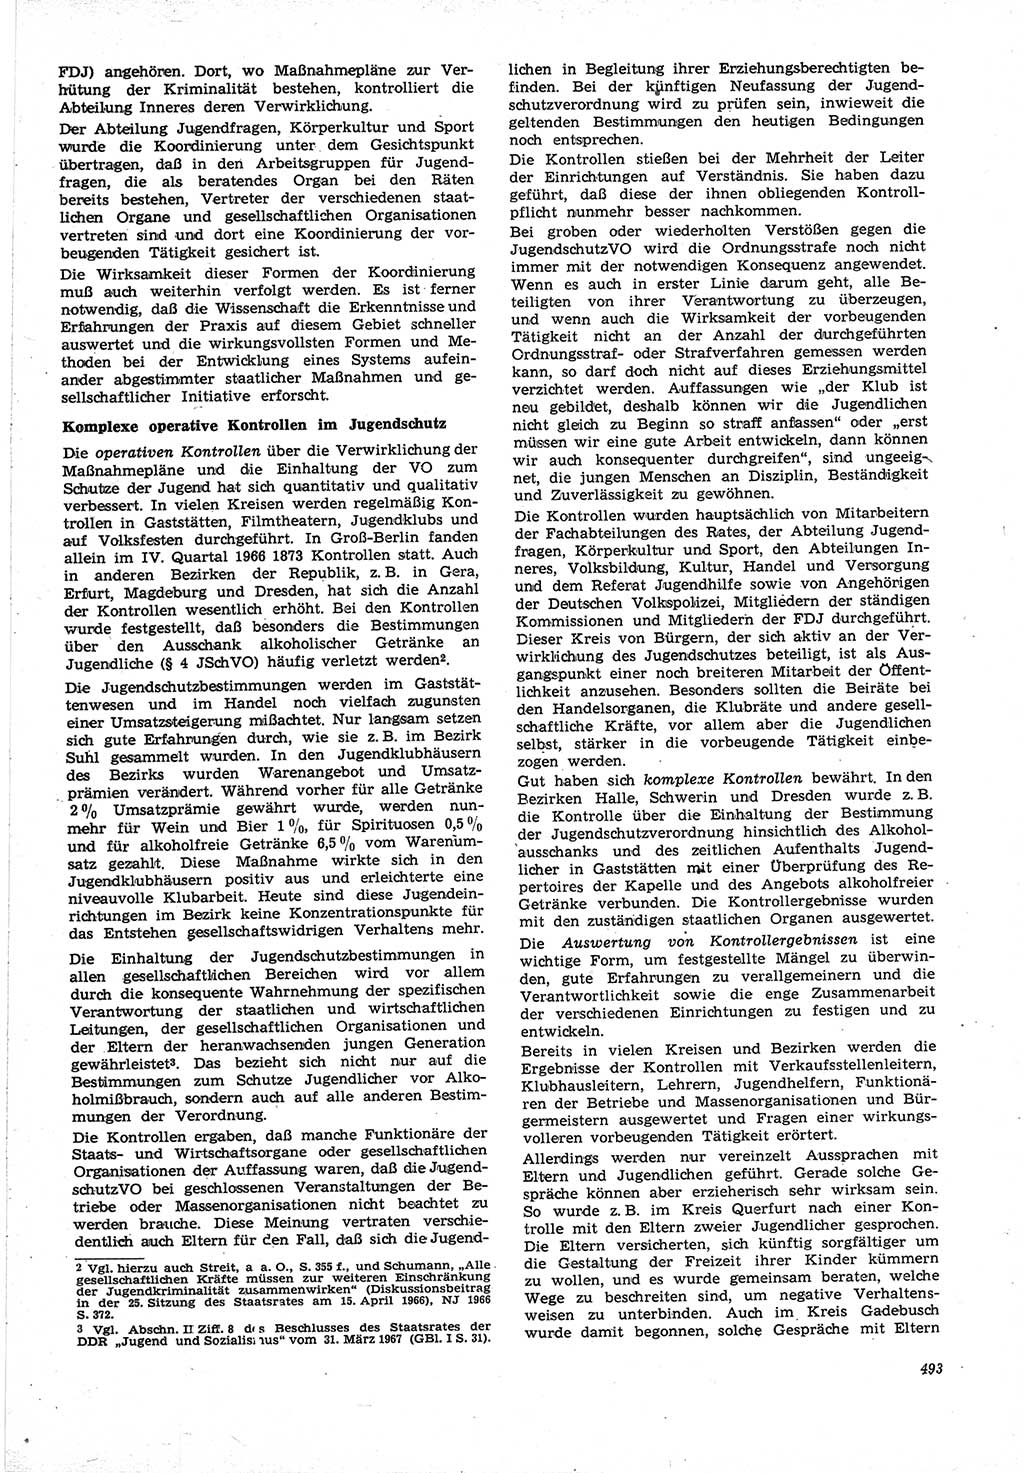 Neue Justiz (NJ), Zeitschrift für Recht und Rechtswissenschaft [Deutsche Demokratische Republik (DDR)], 21. Jahrgang 1967, Seite 493 (NJ DDR 1967, S. 493)